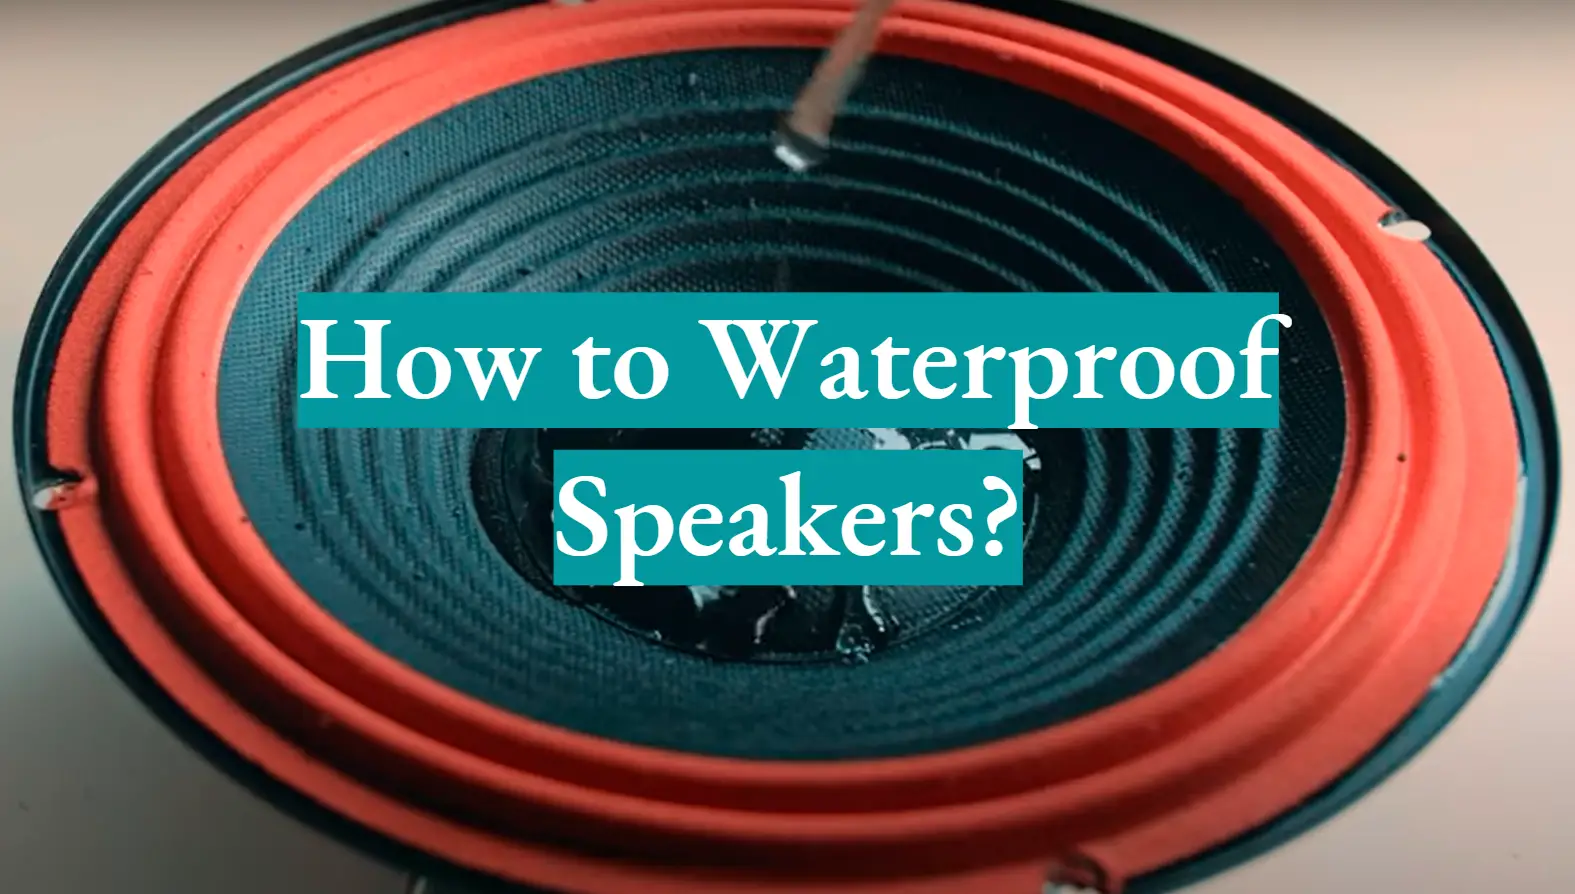 How to Waterproof Speakers?